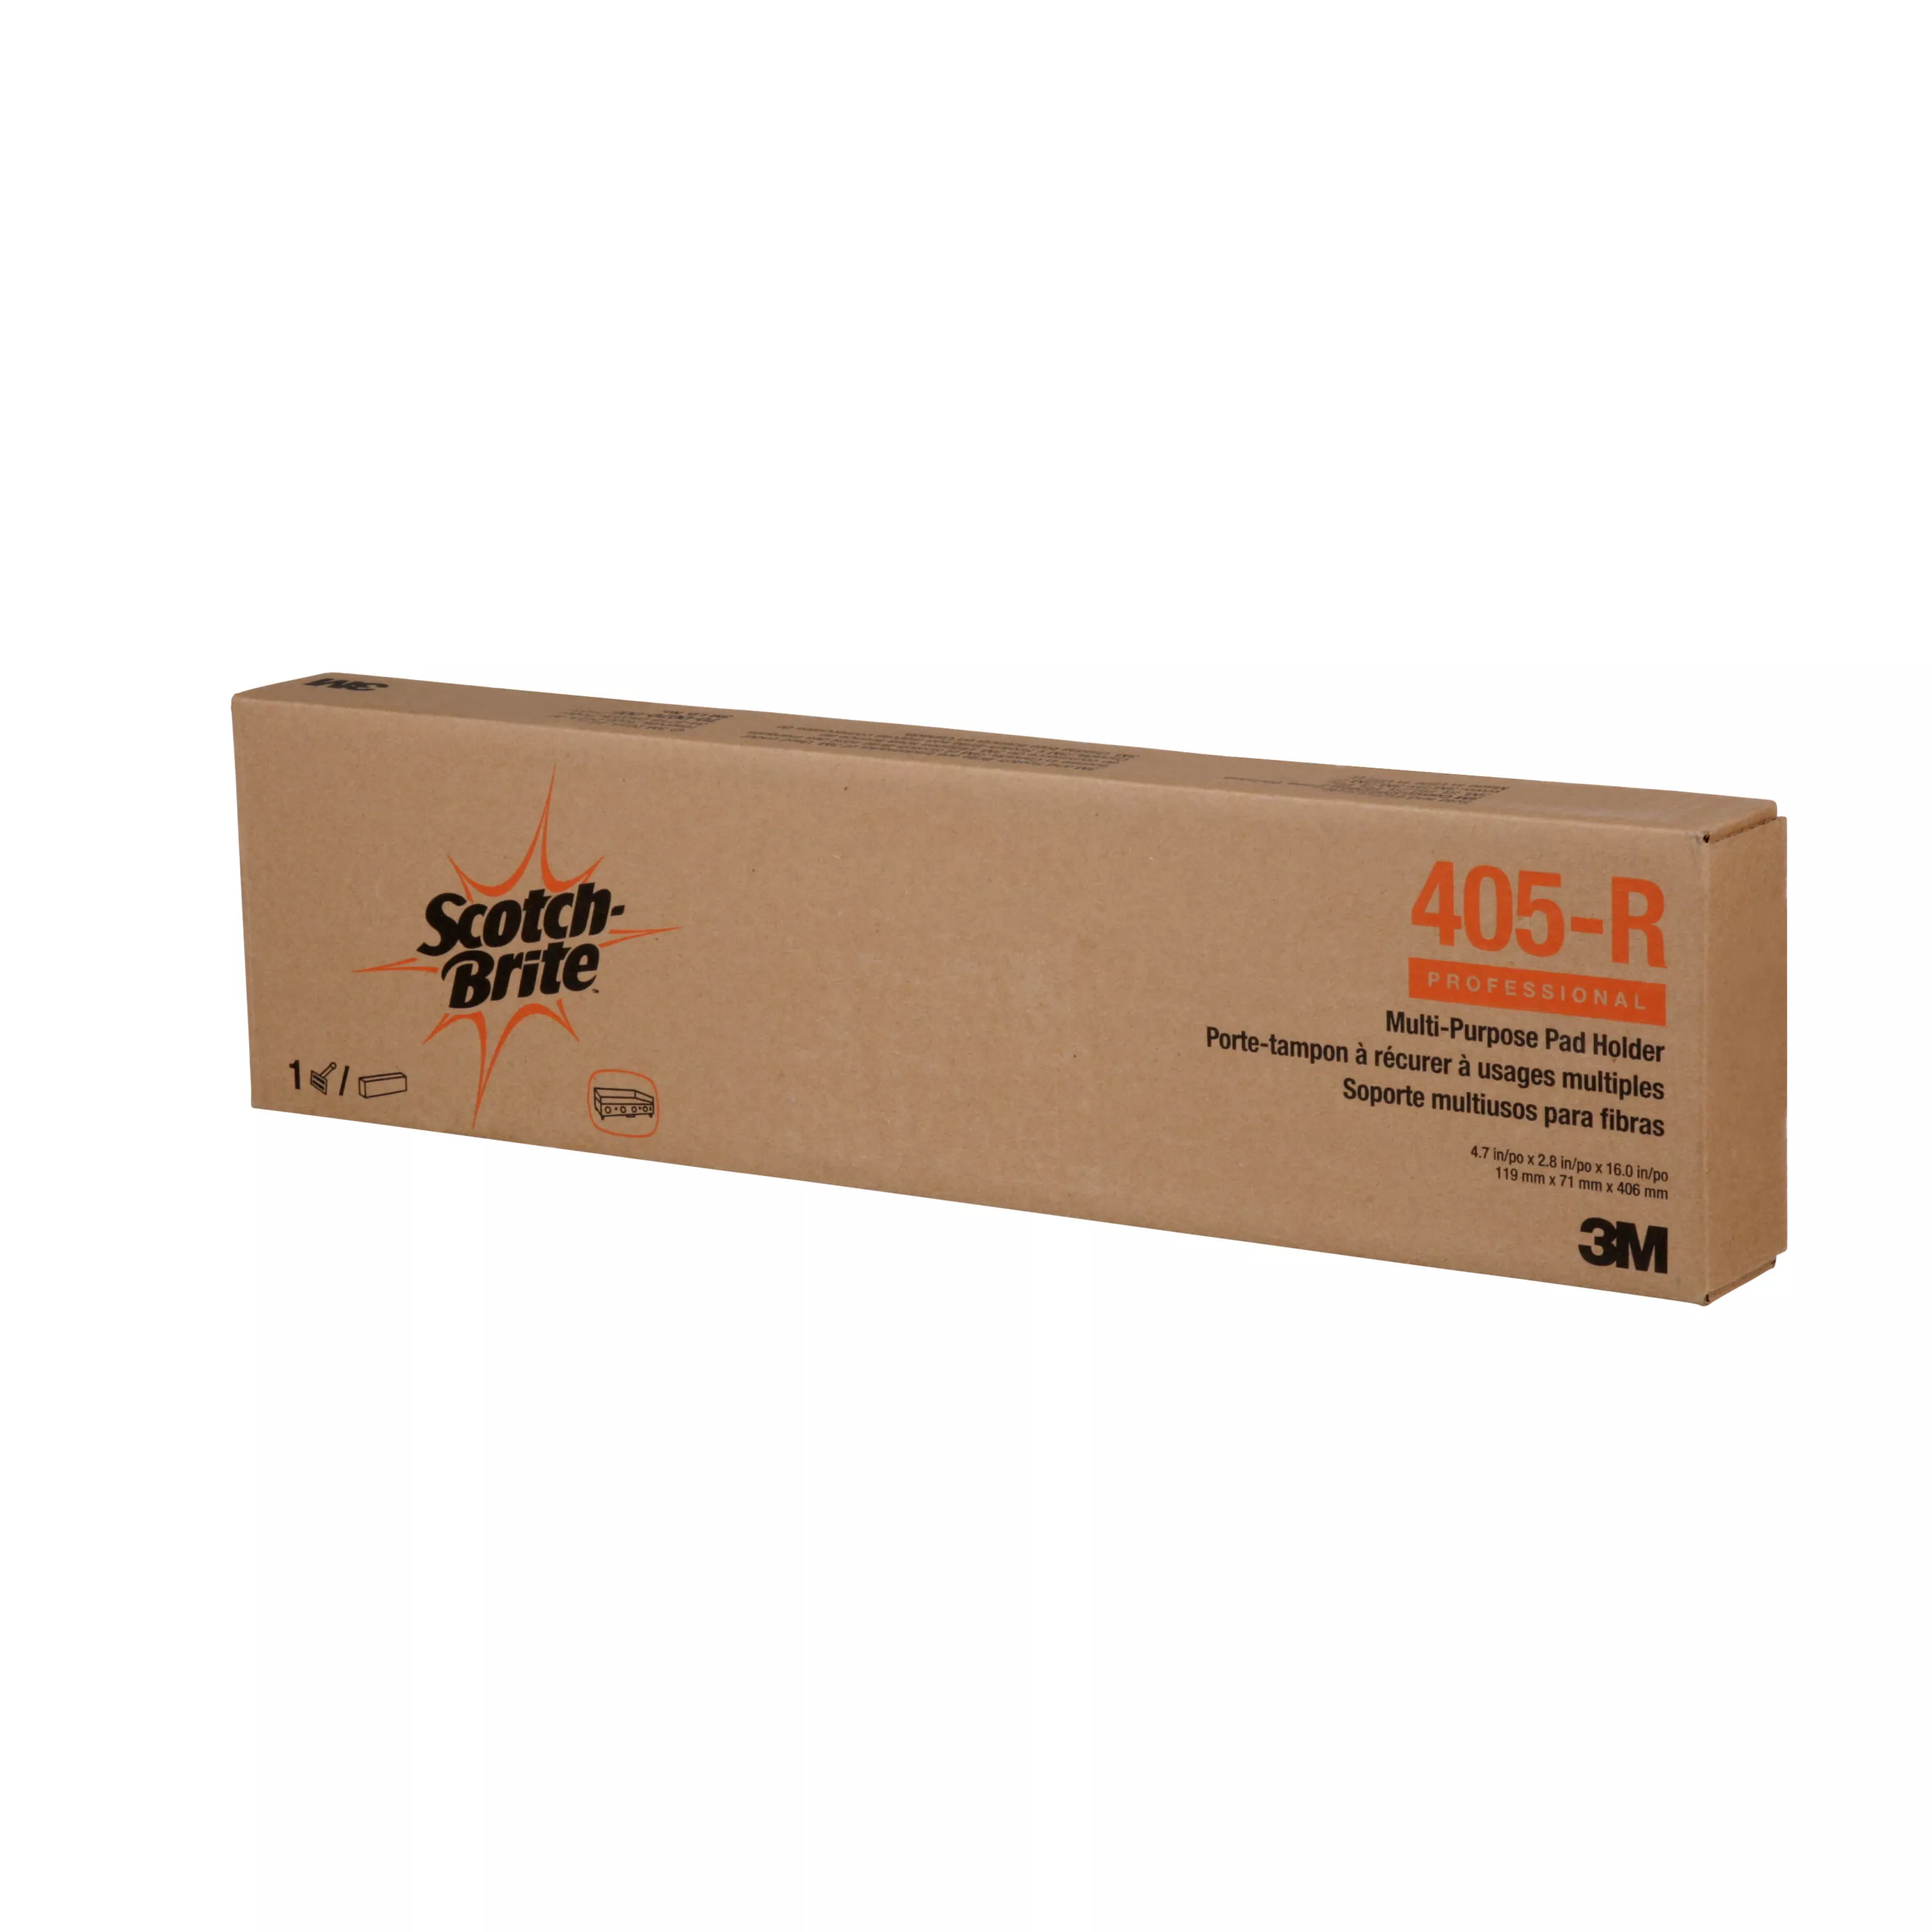 SKU 7100079028 | Scotch-Brite™ Multi-Purpose Pad Holder 405-R